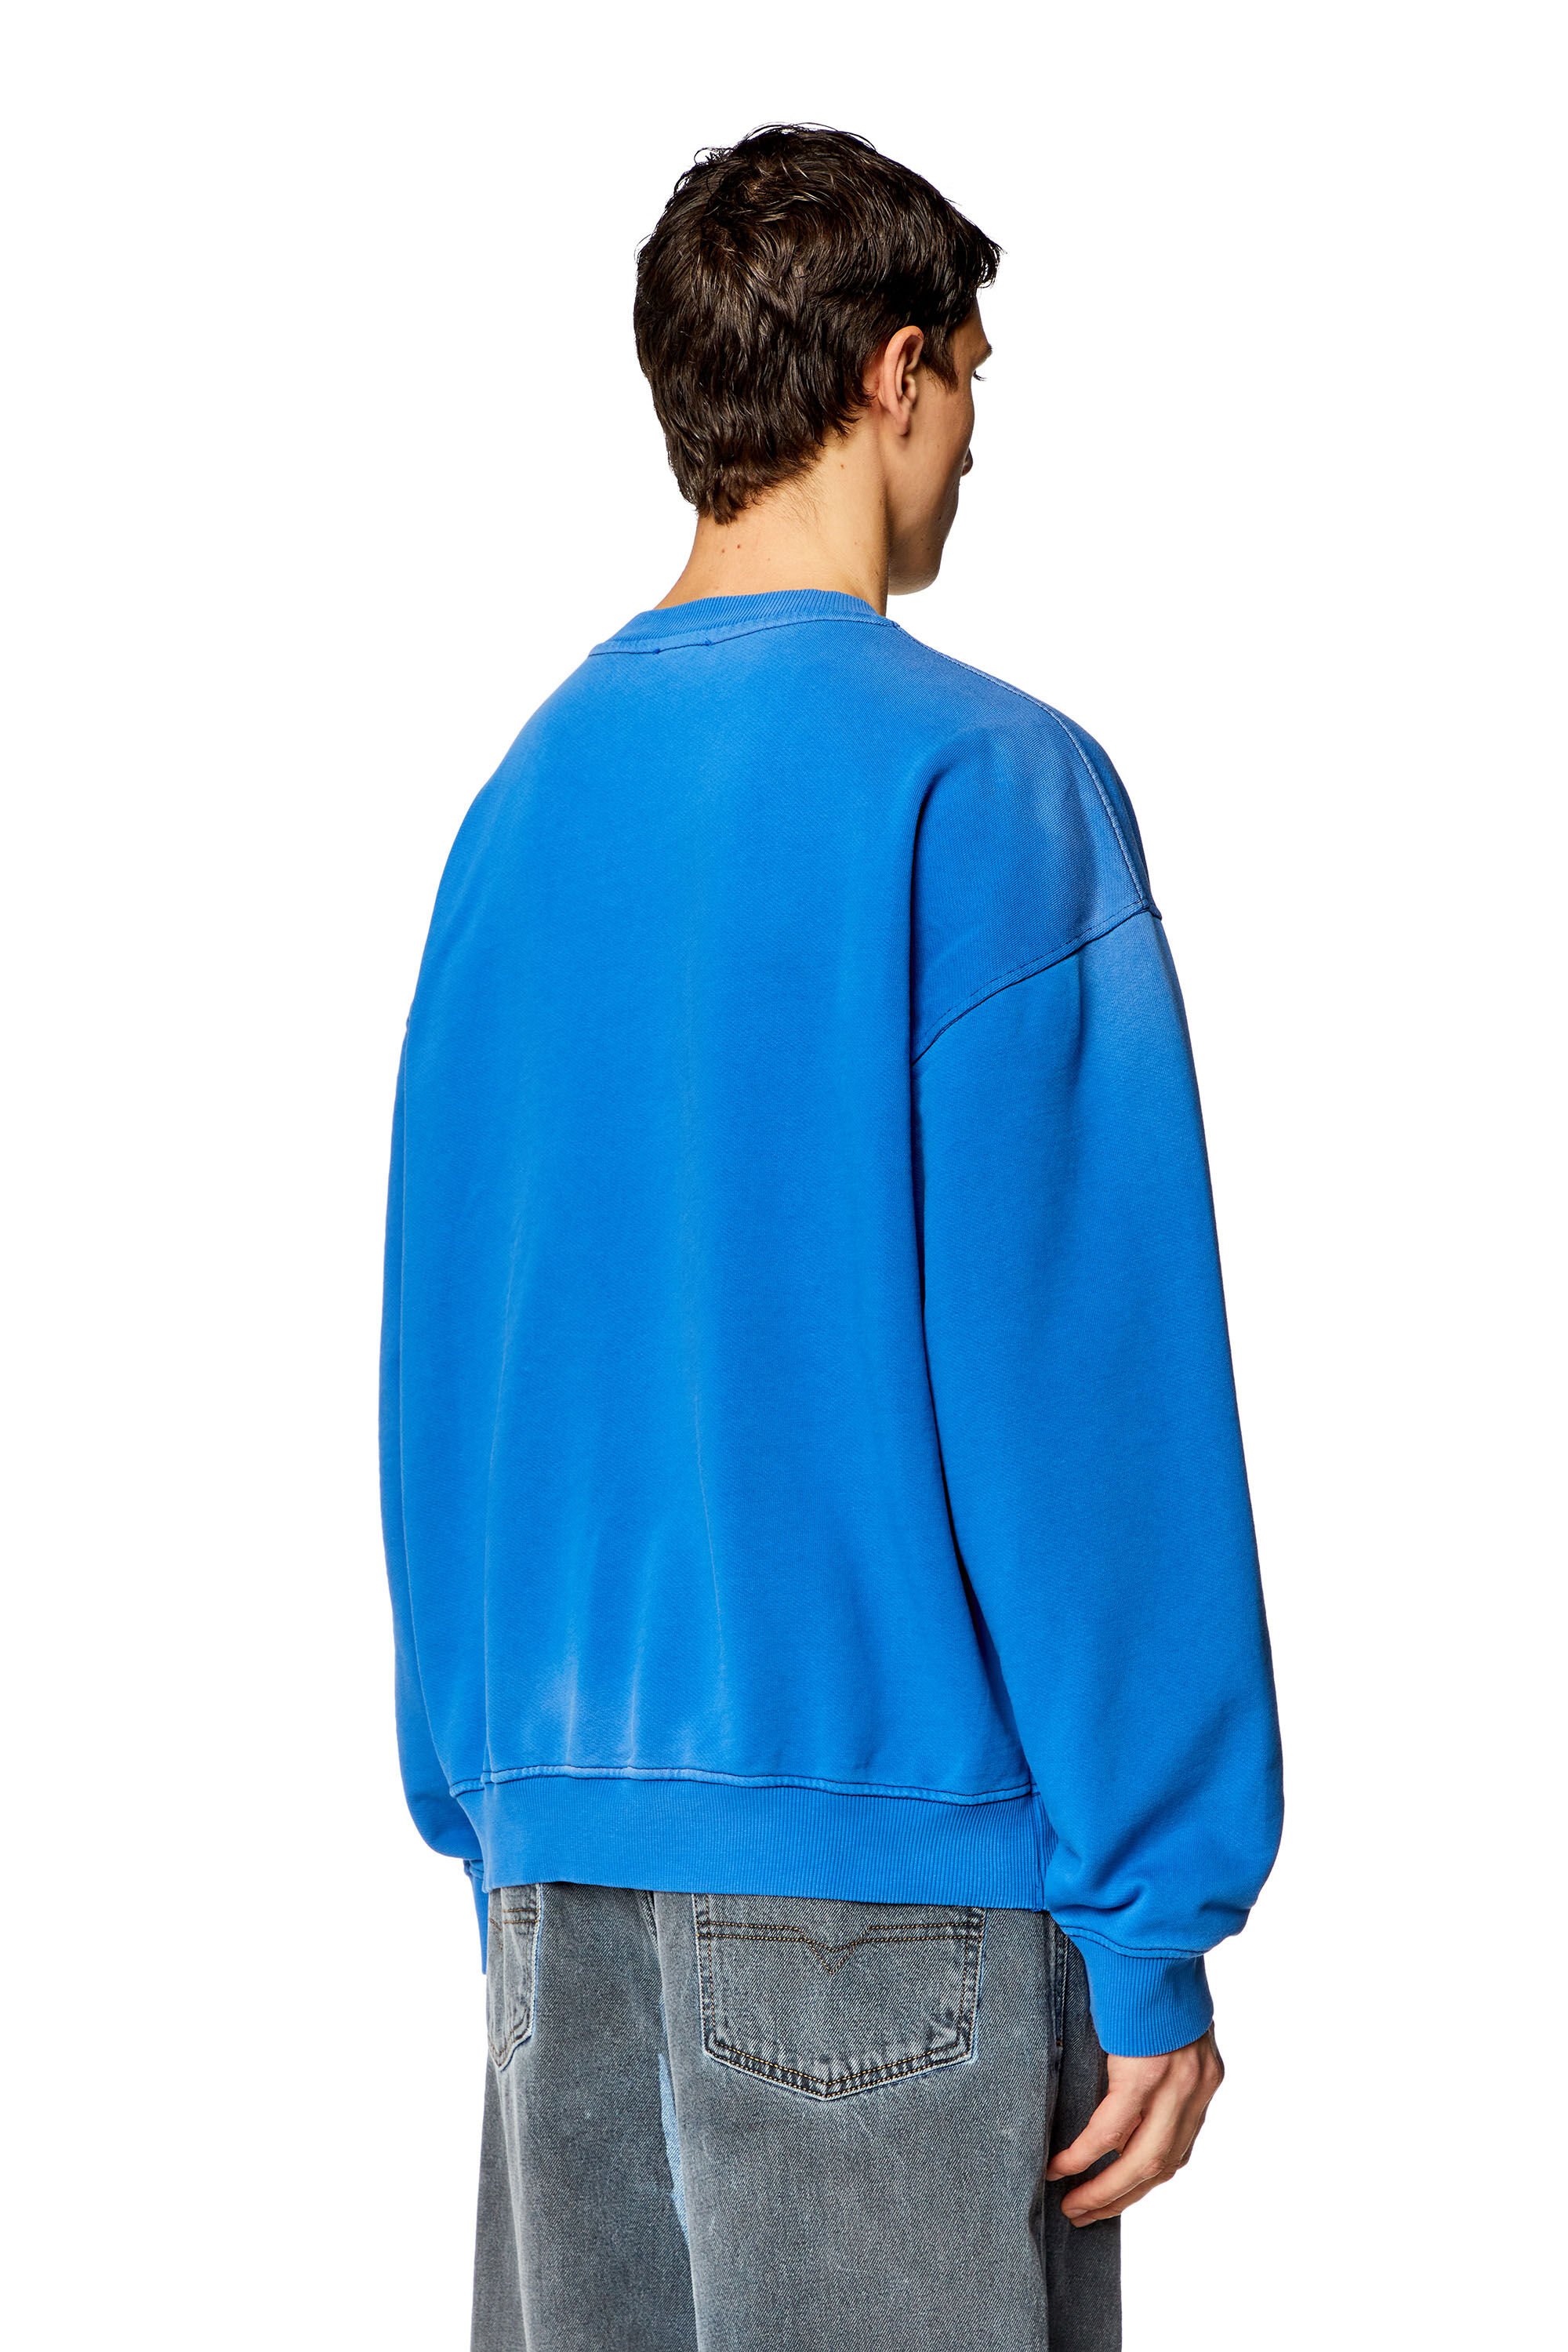 Diesel - S-BOXT-N6, Homme Sweat-shirt style universitaire avec empiècements LIES in Bleu - Image 4